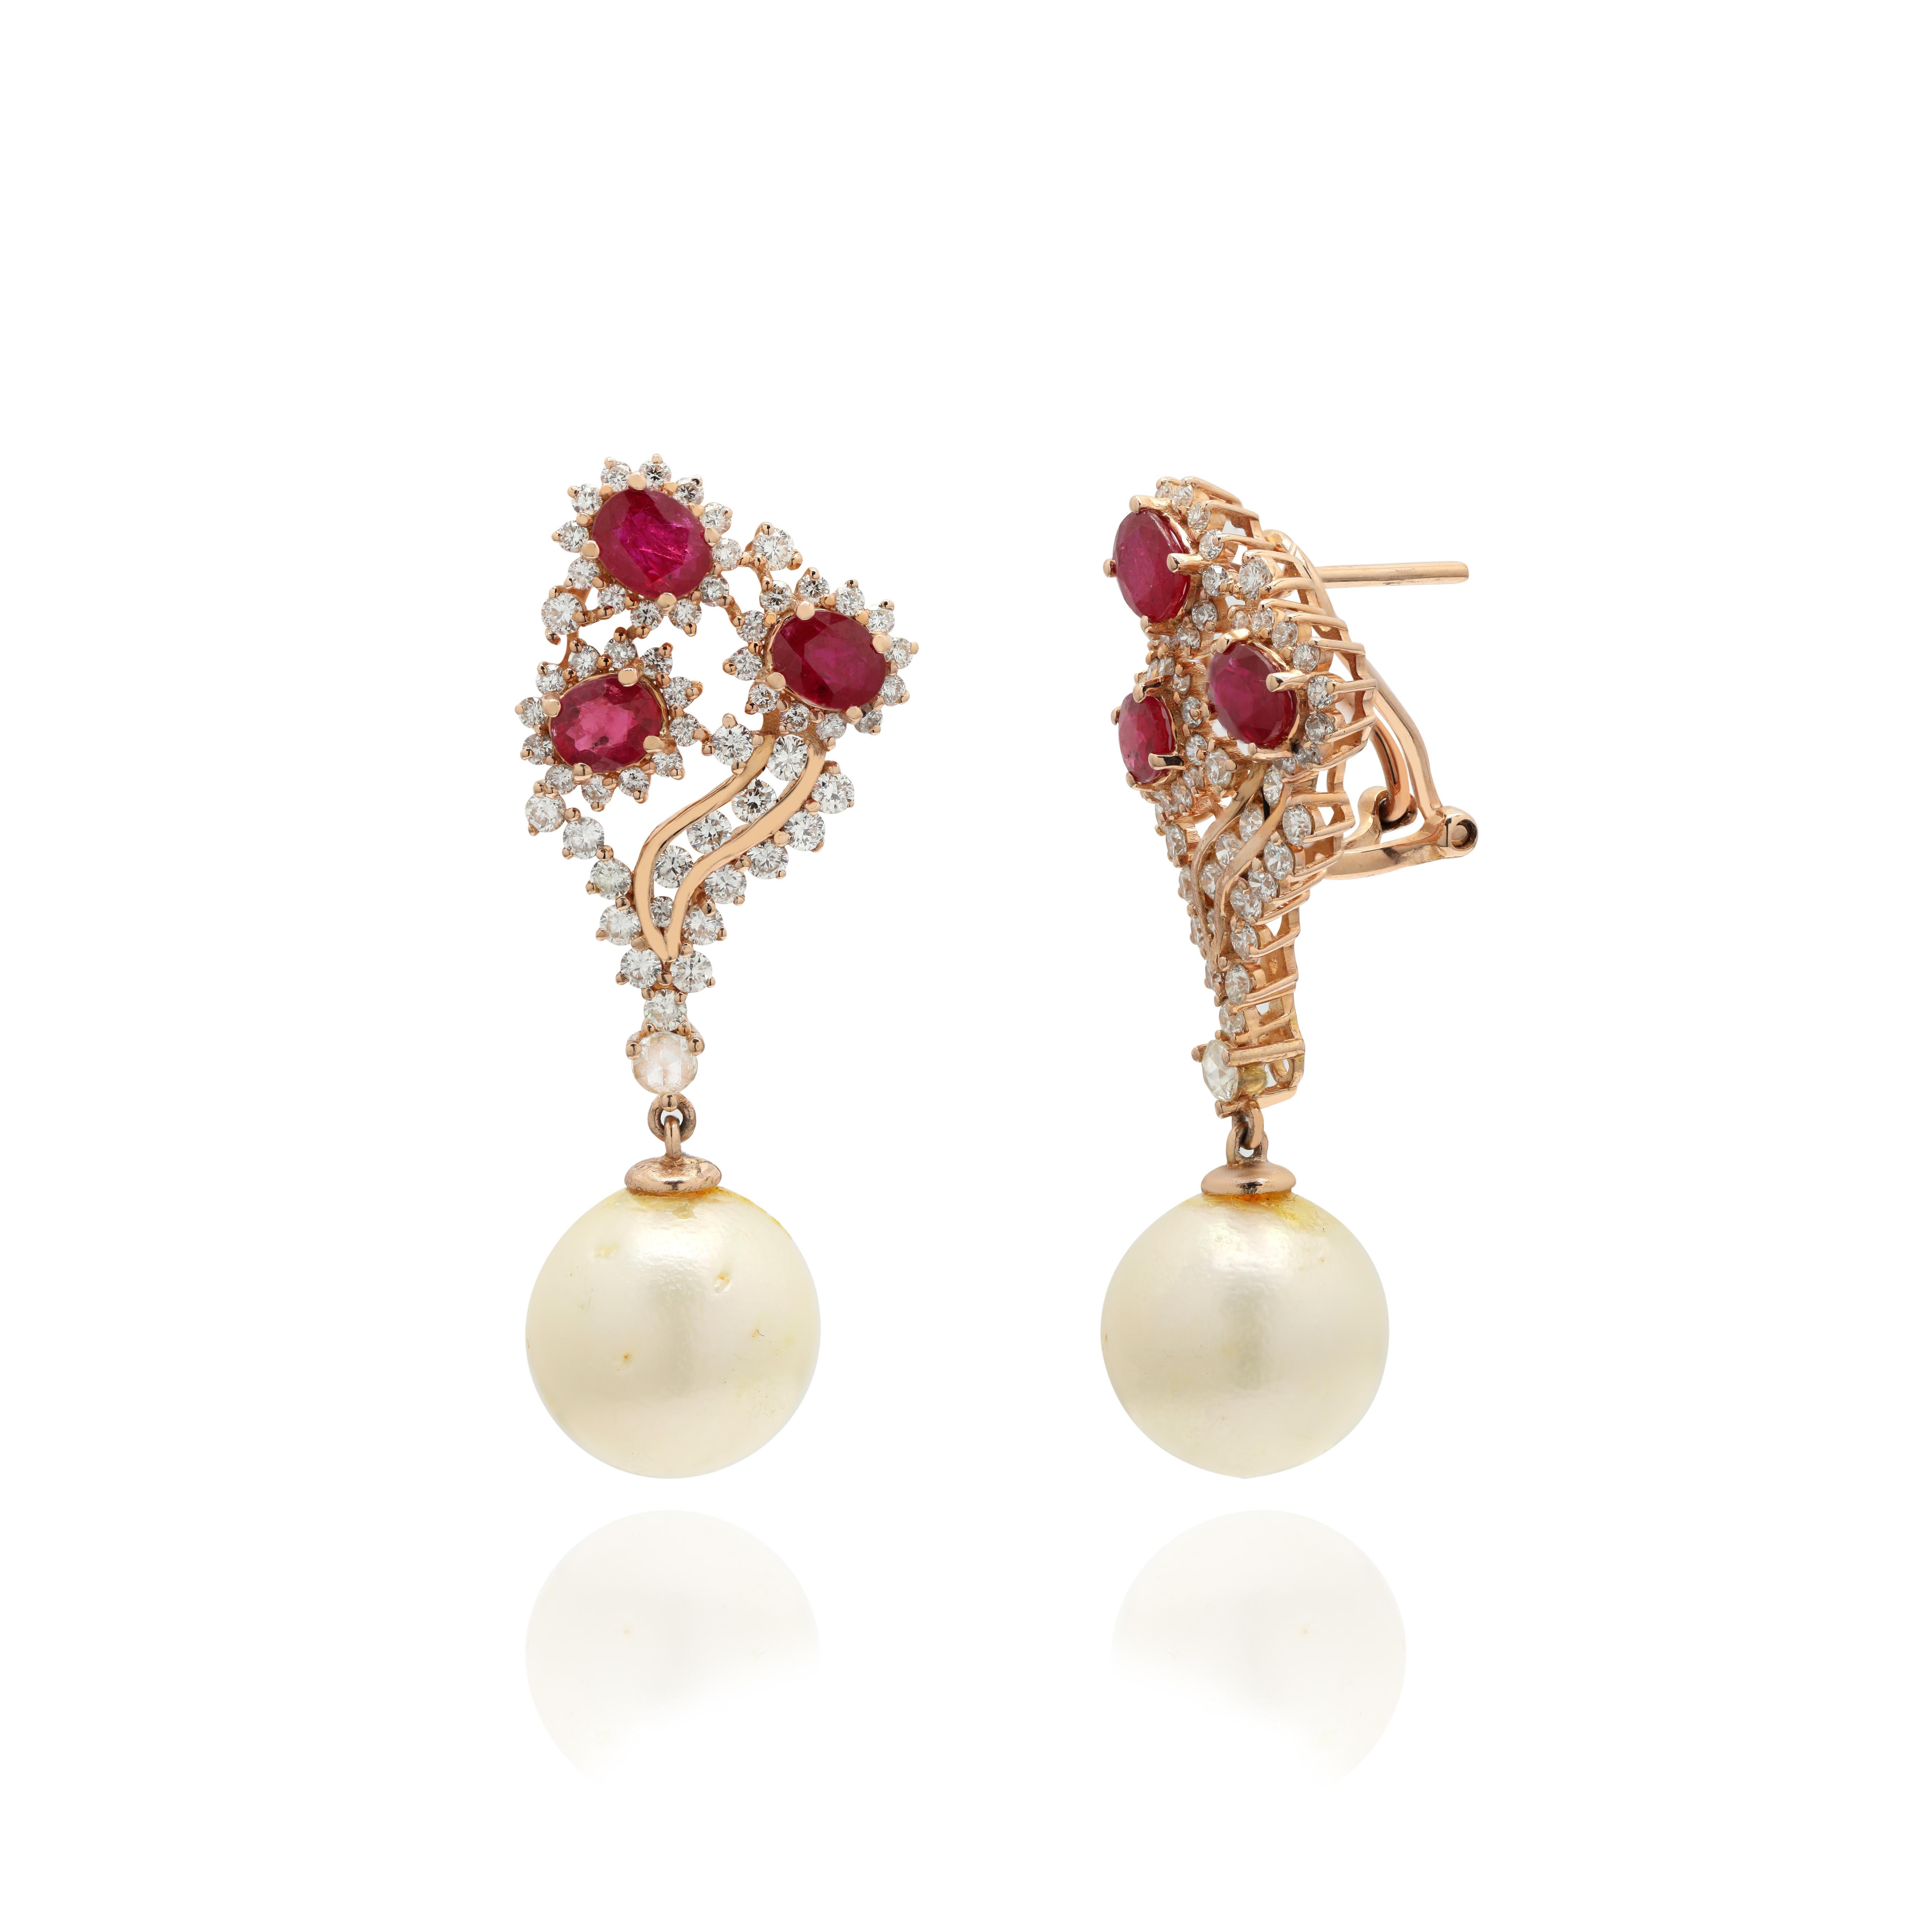 Des boucles d'oreilles pendantes en rubis, perles et diamants pour affirmer votre look. Ces boucles d'oreilles créent un look étincelant et luxueux, avec des pierres précieuses de taille ovale et ronde.
Si vous aimez graviter autour de styles